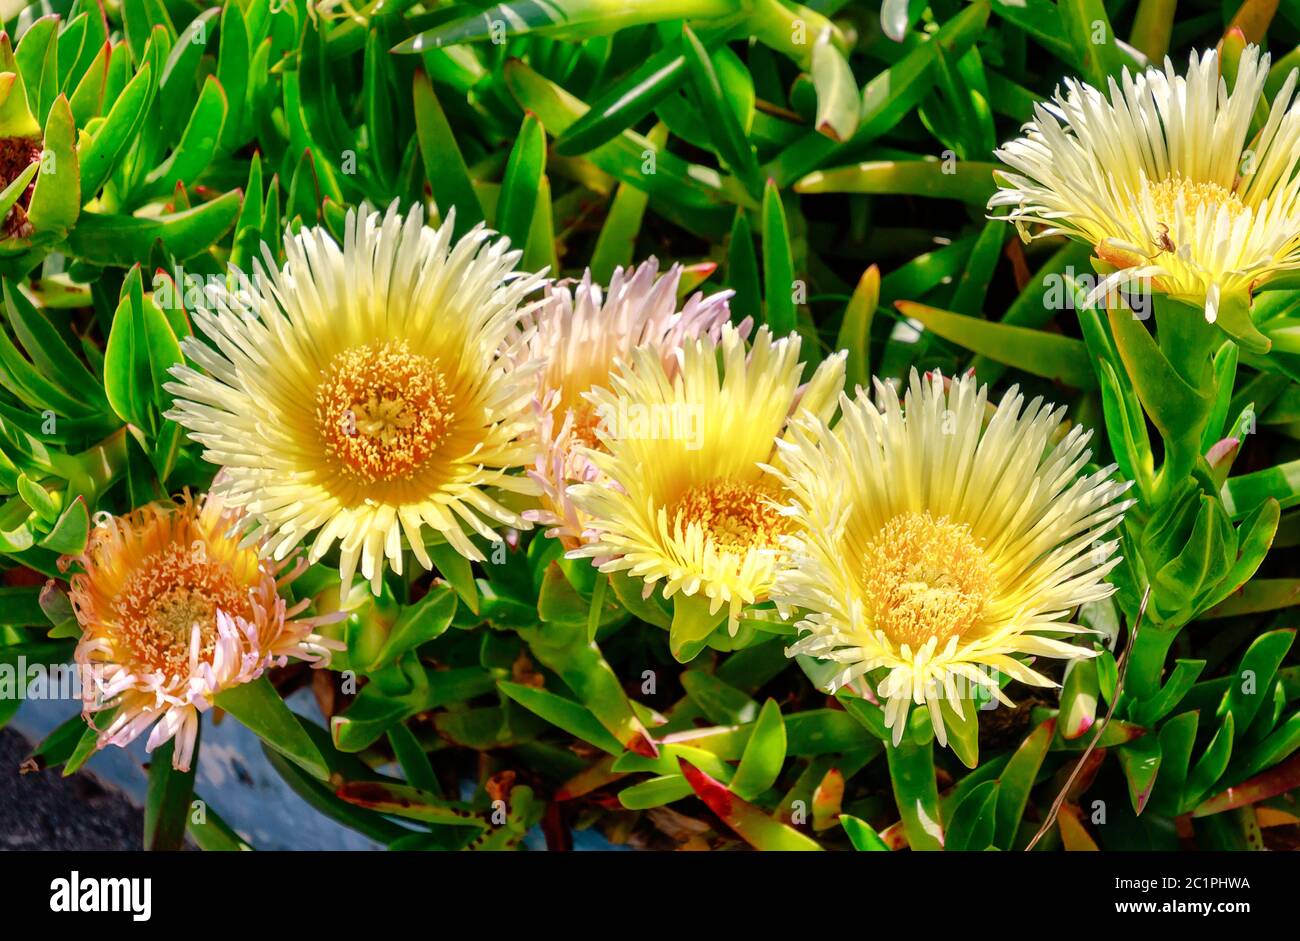 Hottentot-Feige (Carpobrotus edulis) große gelbe Gänseblümchen-ähnliche Blume, die in Südafrika beheimatet ist. Es ist auch als Eispflanze, Autobahneispflanze, saure Feige oder schweineblitz bekannt. Stockfoto